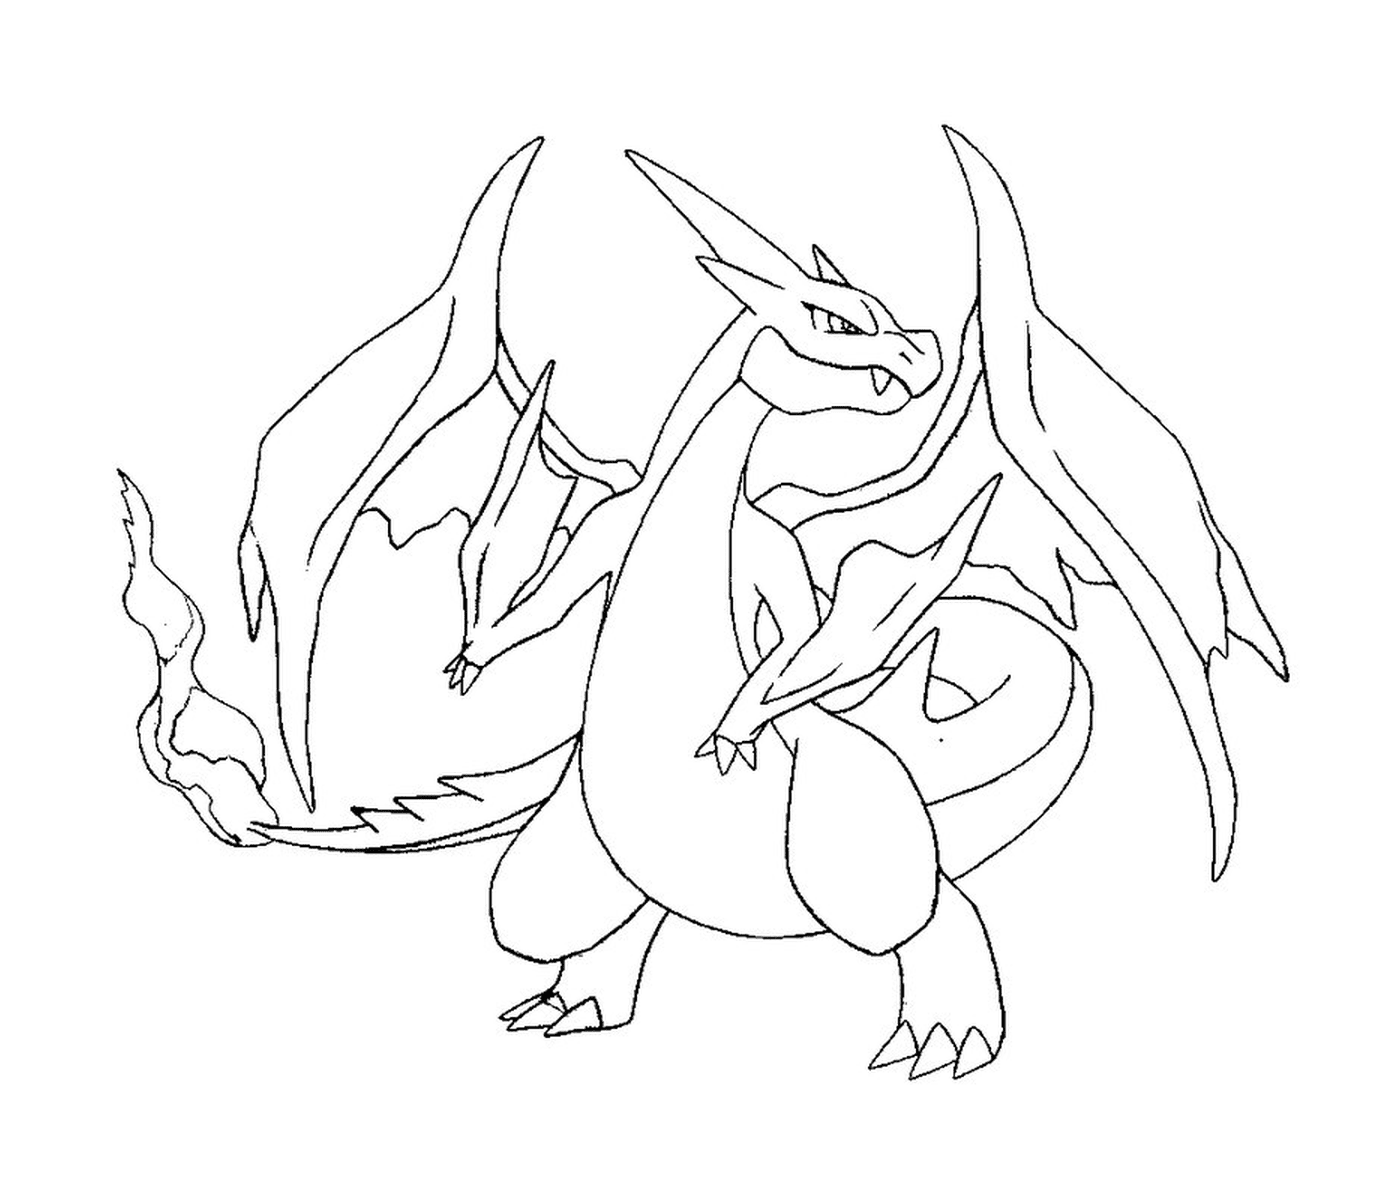  Dracaufeu, the Pokémon dragon 